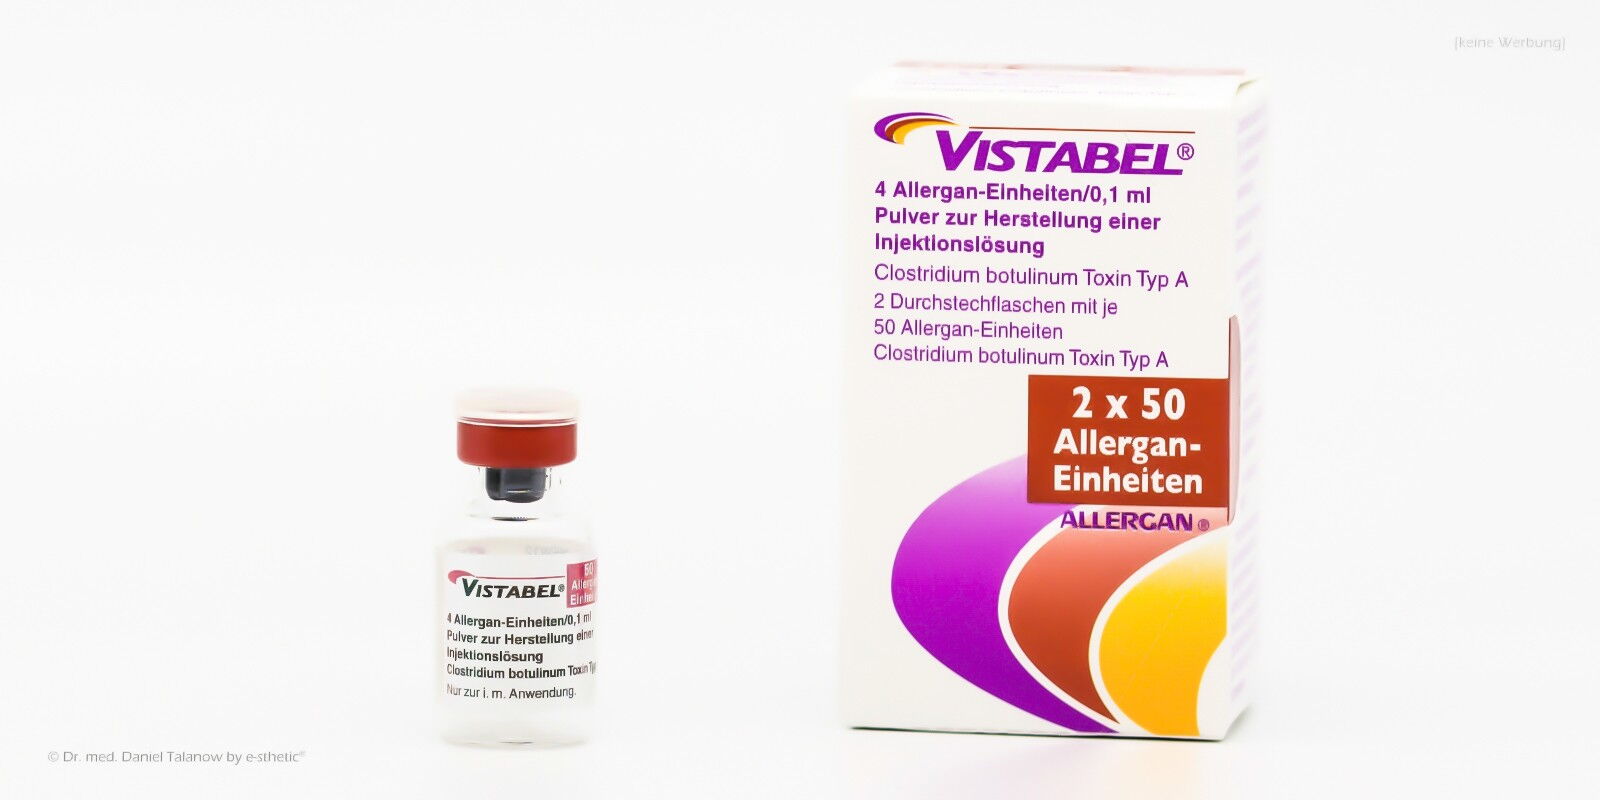 VISTABEL® wird primär für eine Behandlung von mimischen Falten verwendet